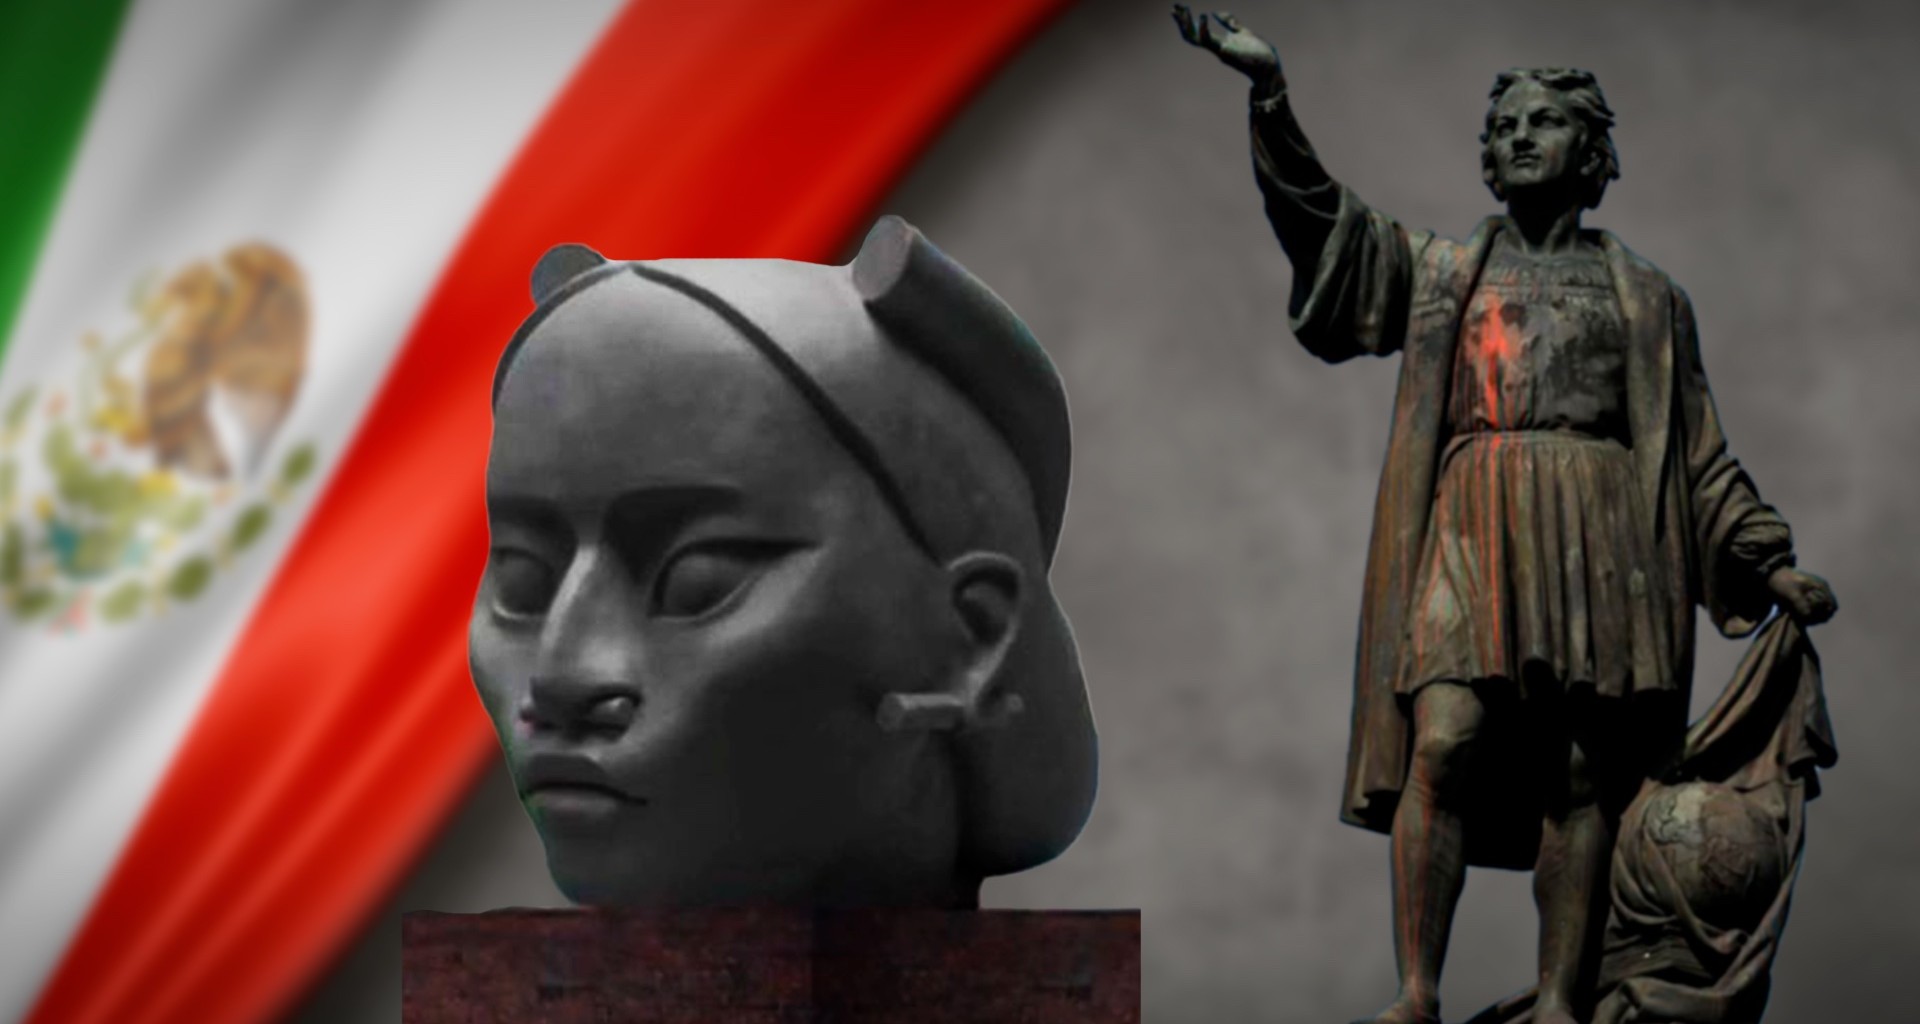 Estatua de Colón y Escultura de Tlali son símbolos para crear identidad nacional